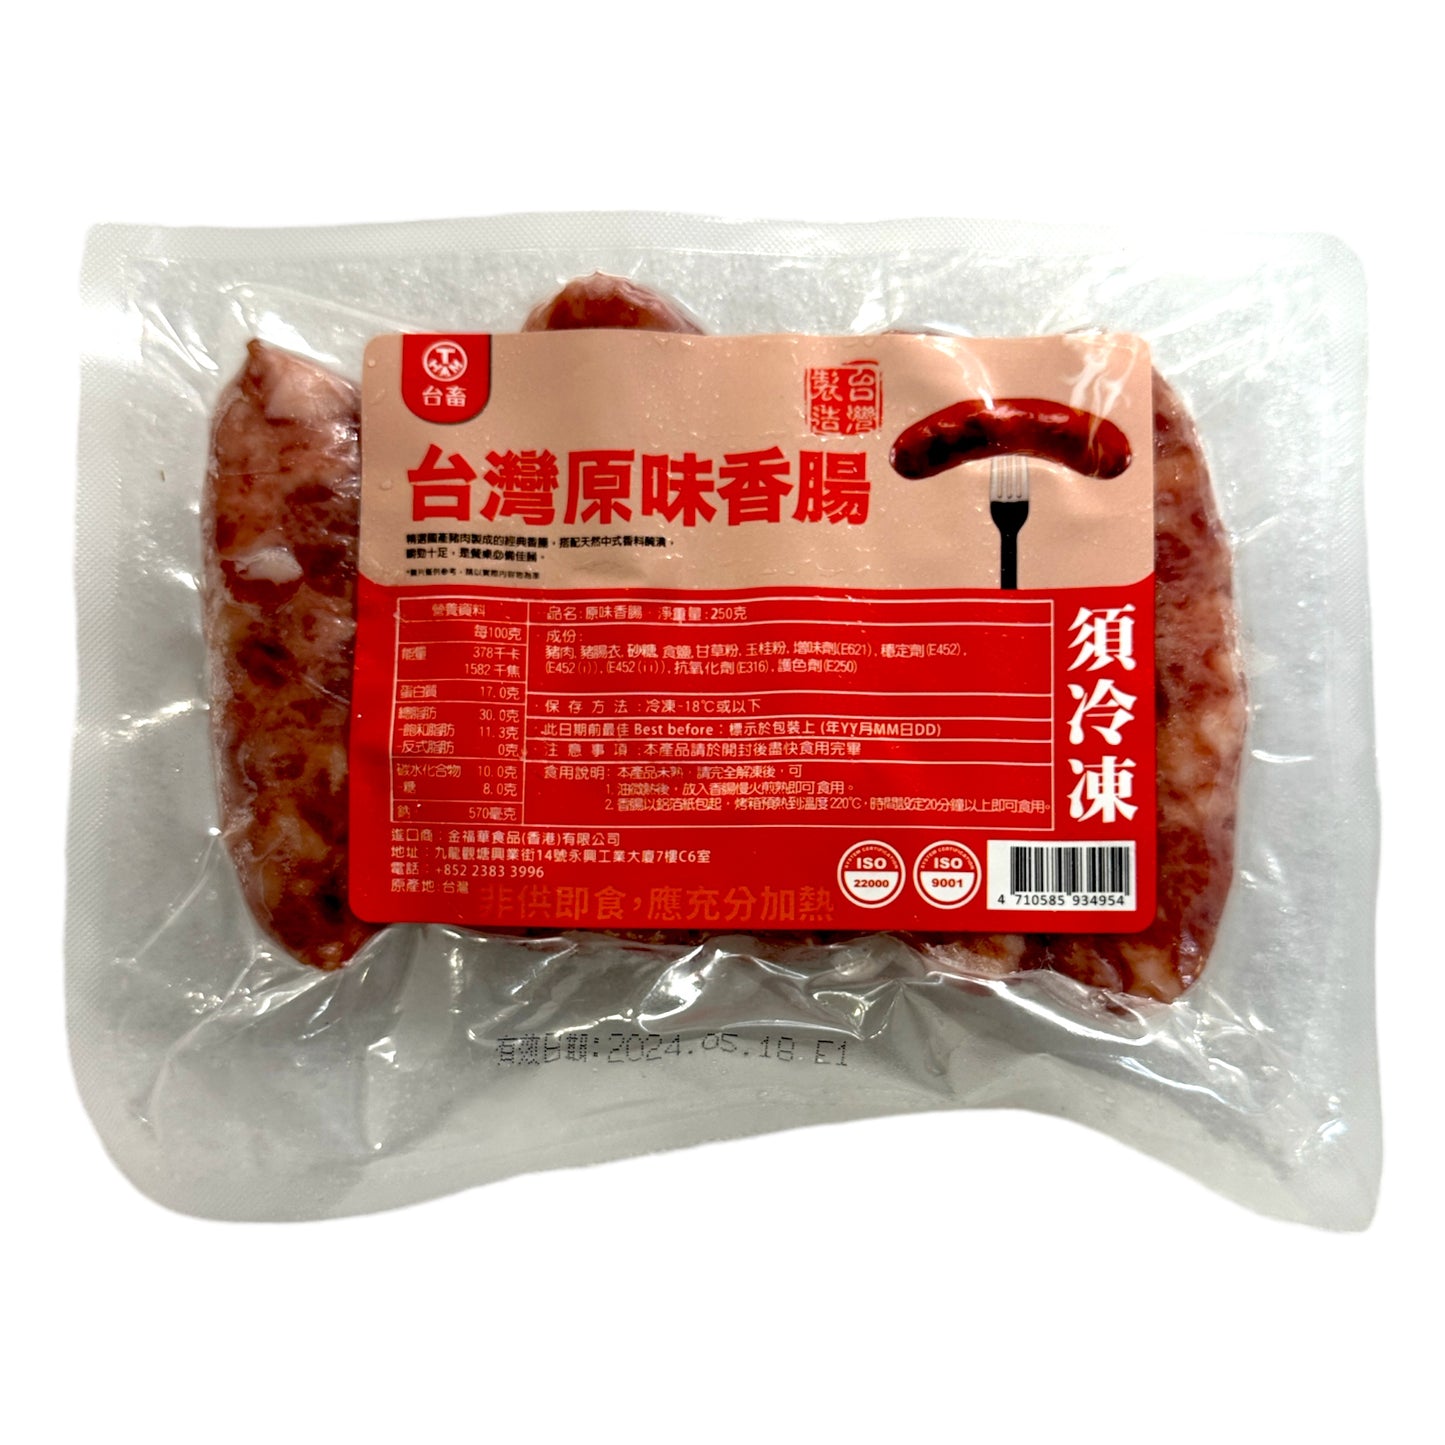 台灣 經典原味香腸 250g